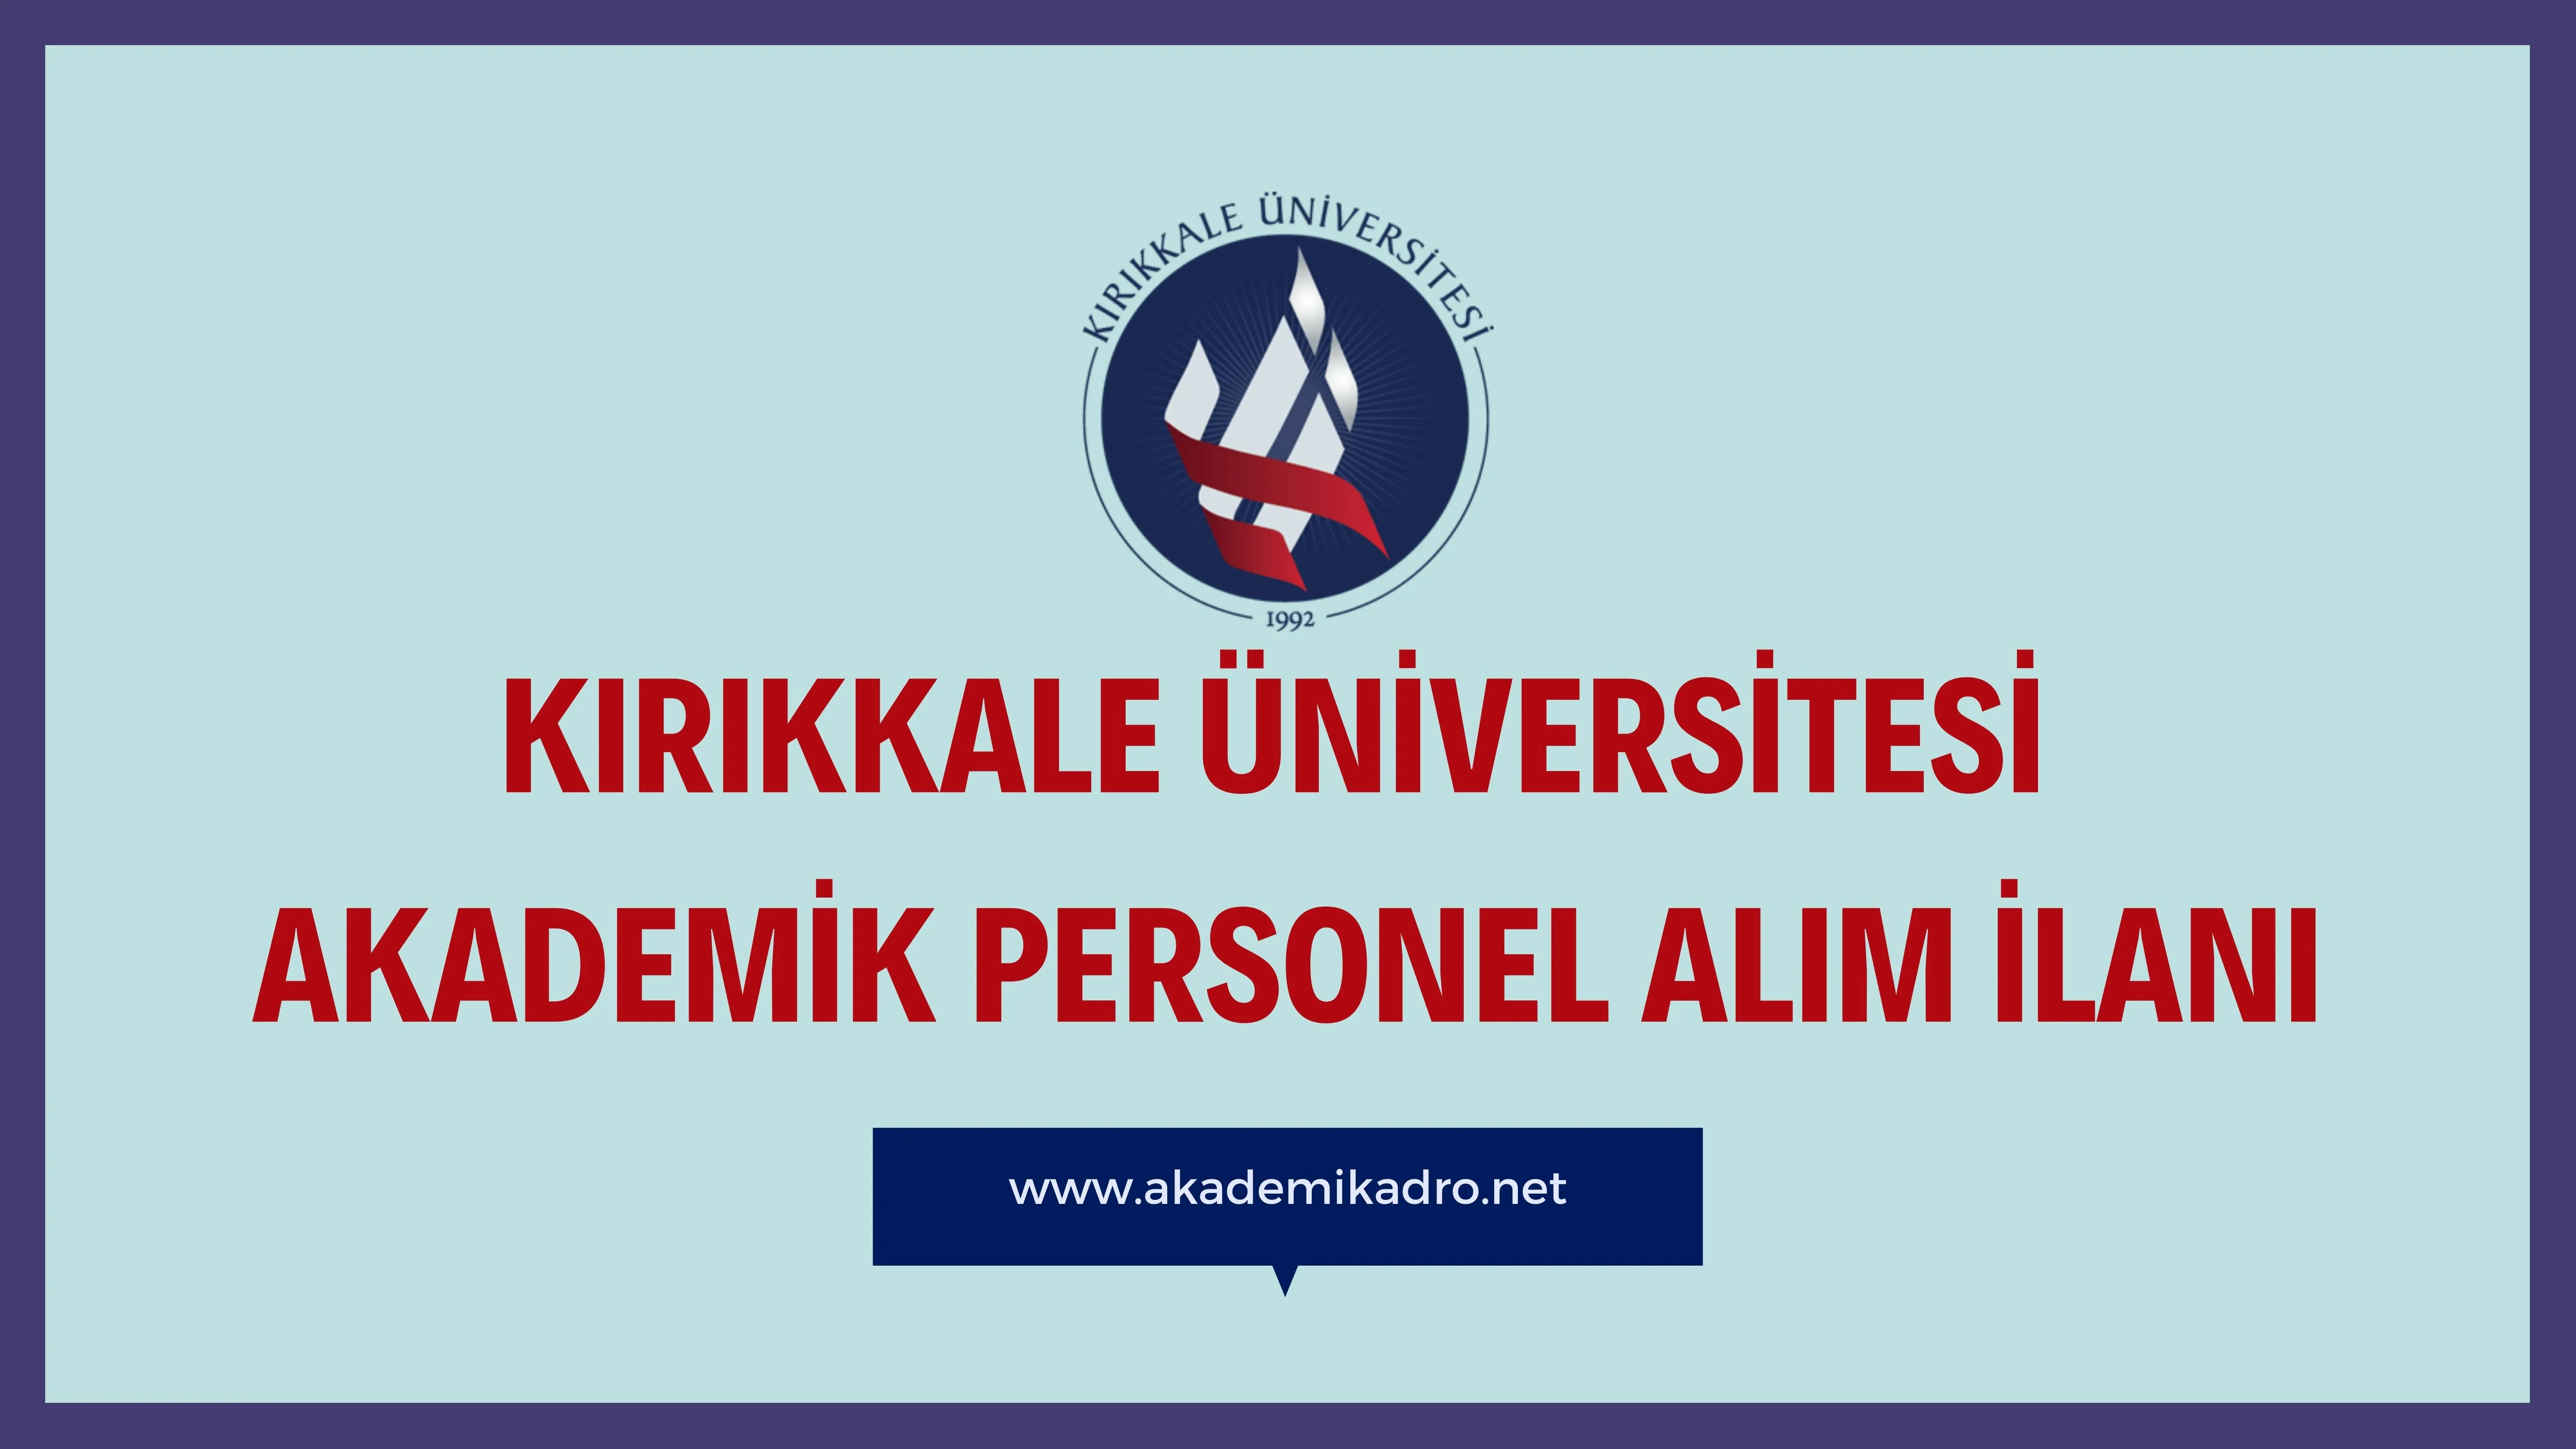 Kırıkkale Üniversitesi birçok alandan 28 akademik personel alacak.